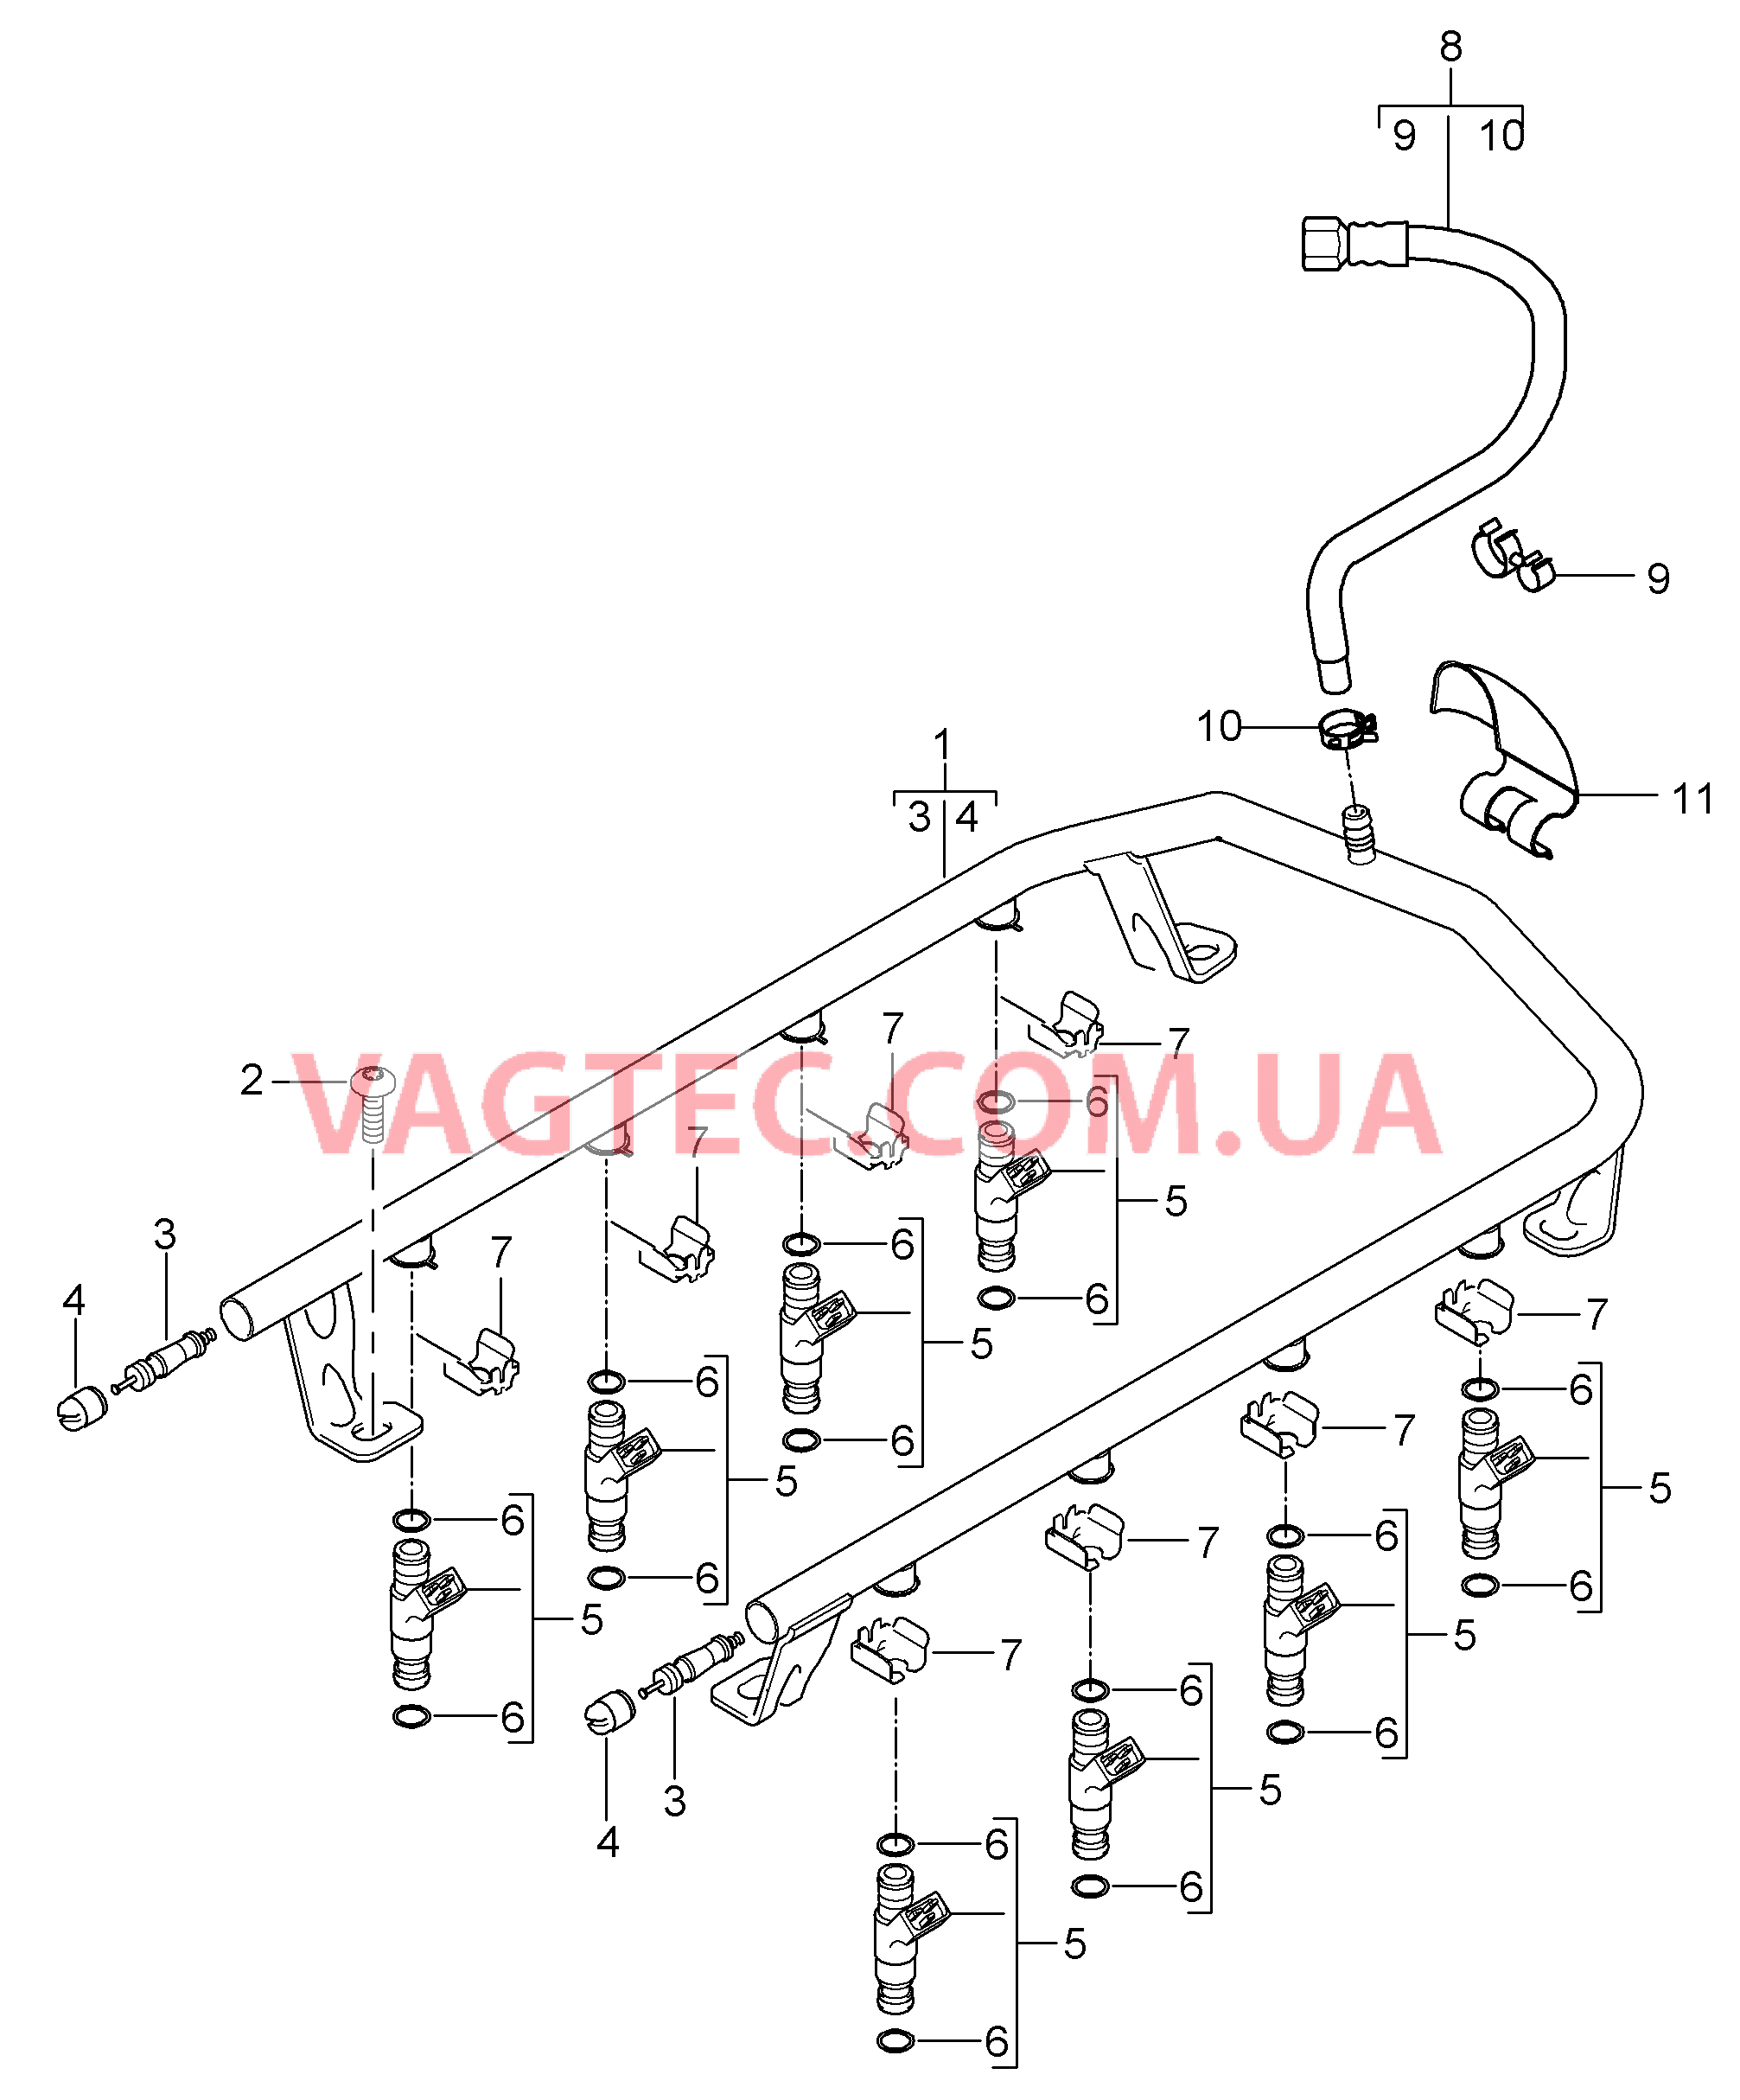 107-005 Топливная магистраль
						
						M48.00/50 для PORSCHE Cayenne 2003-2006USA